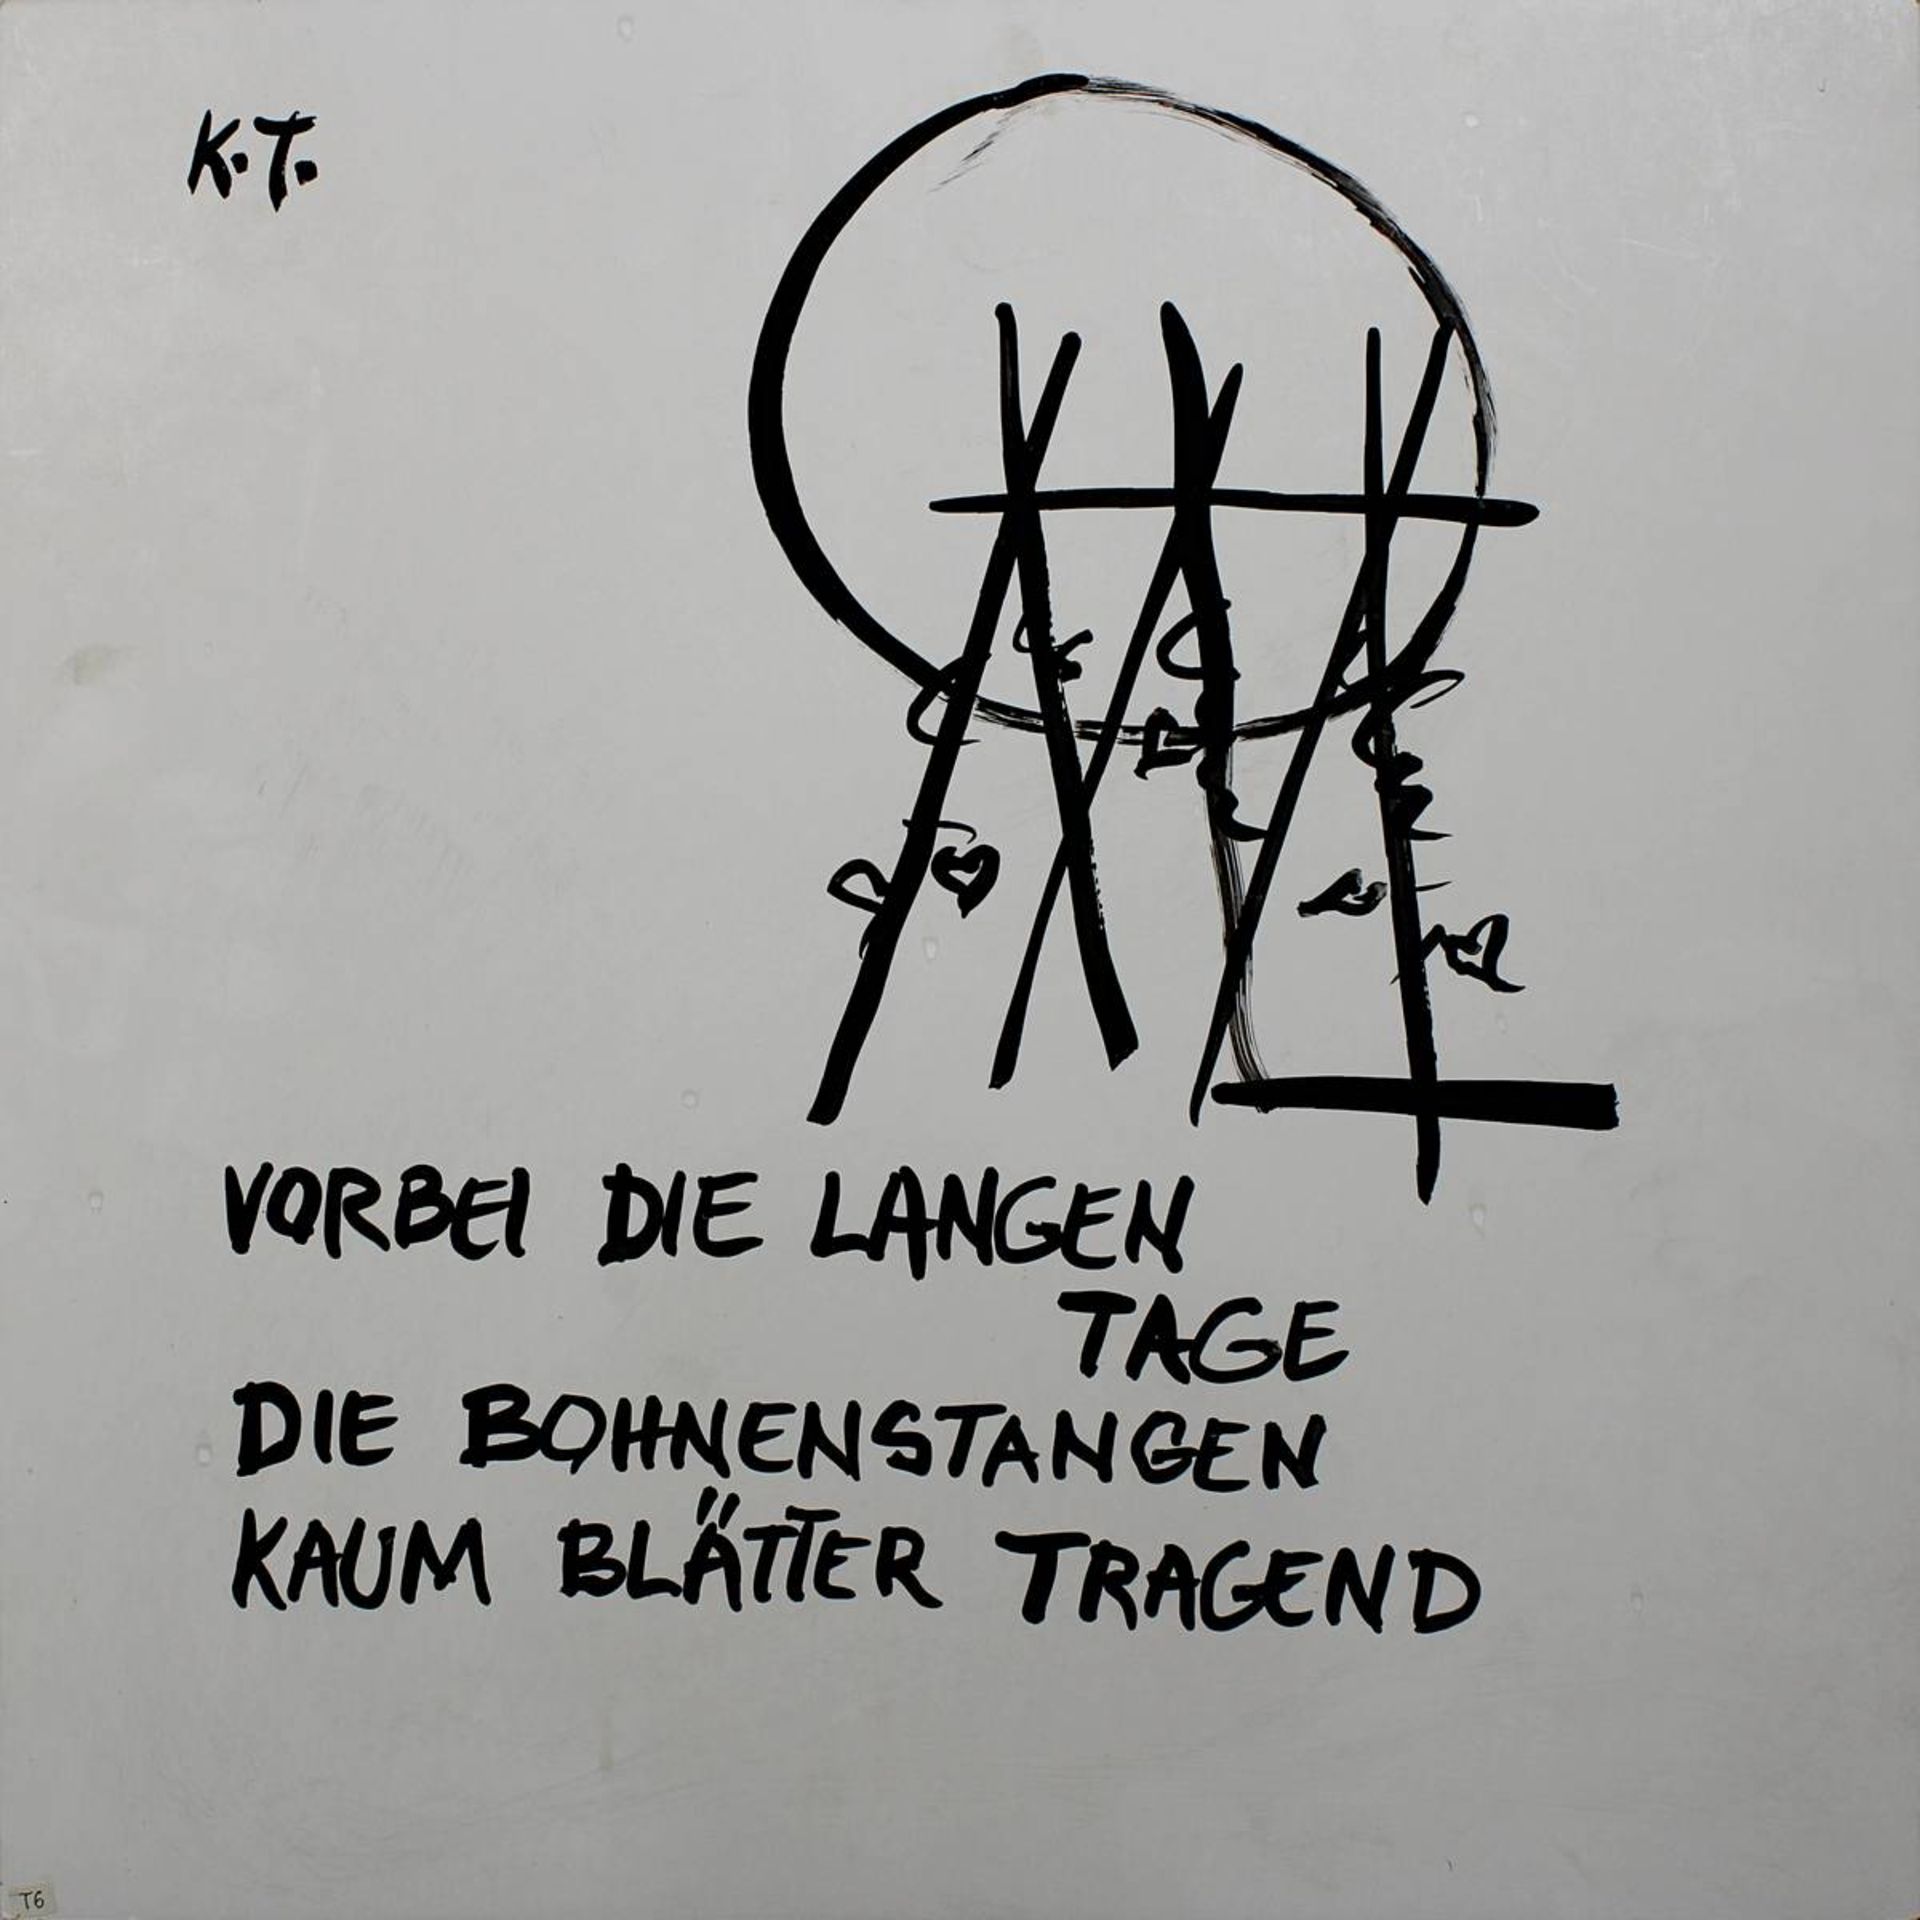 Trinkewitz, Karel (Meceriz 1931 - 2014 Hamburg) "Haiku" - "Vorbei die langen Tage, Die Bohnenstangen